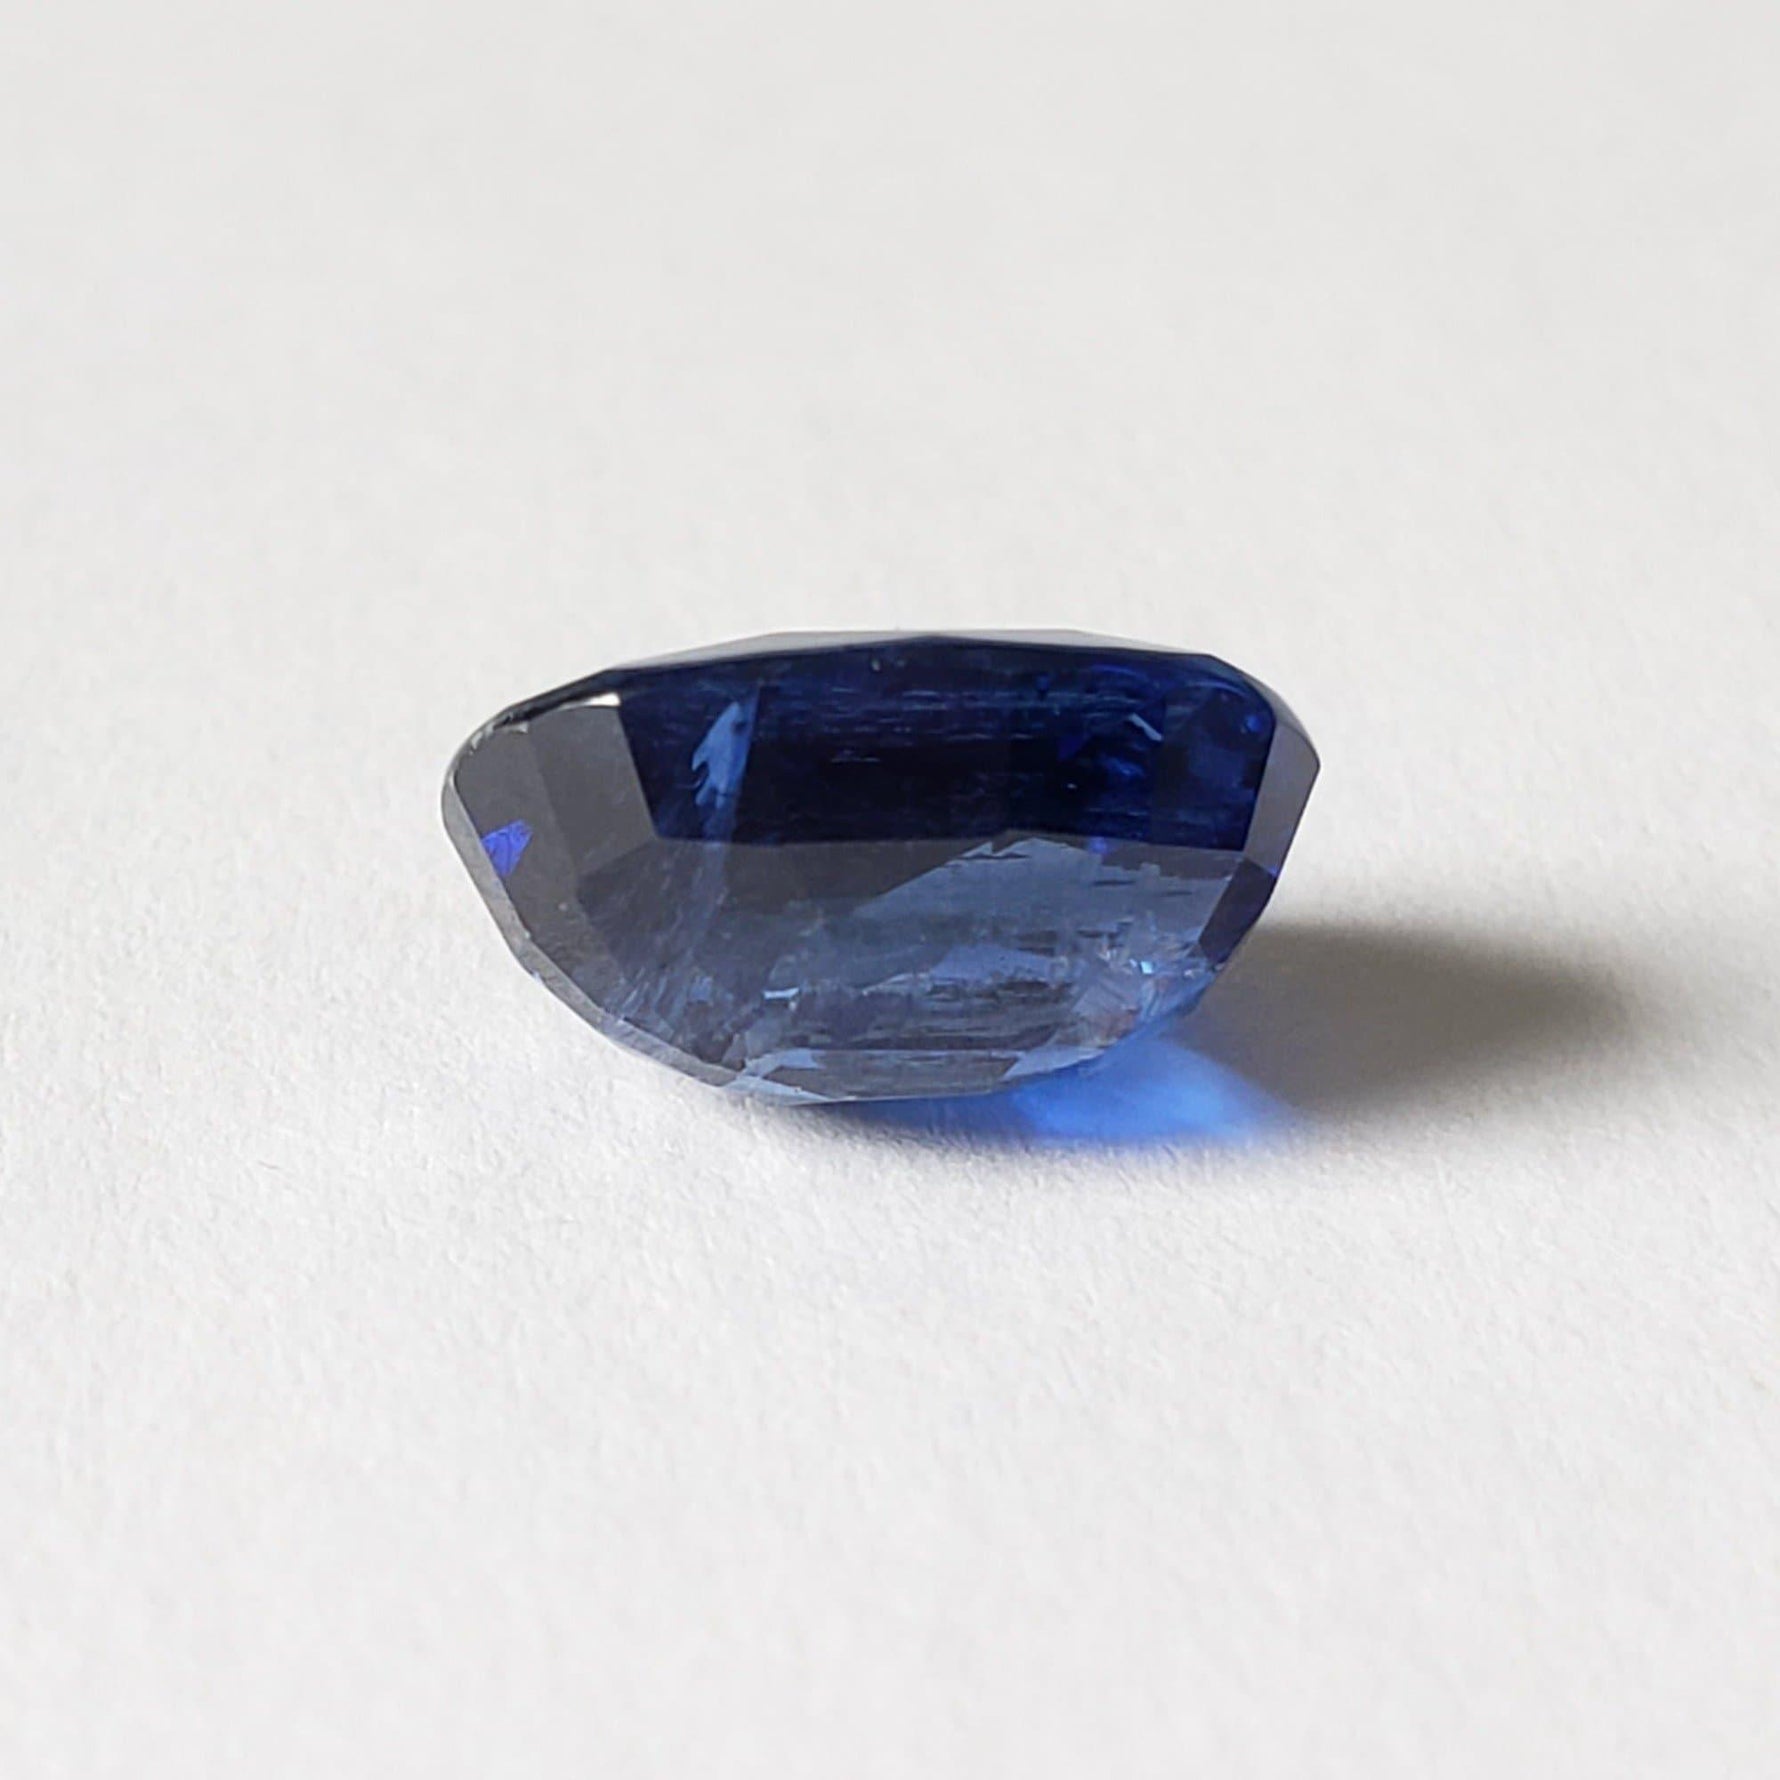 Kyanite | Unheated Kyanite | Oval Cut | Blue | 11x8.1mm 4.59ct | Tibet